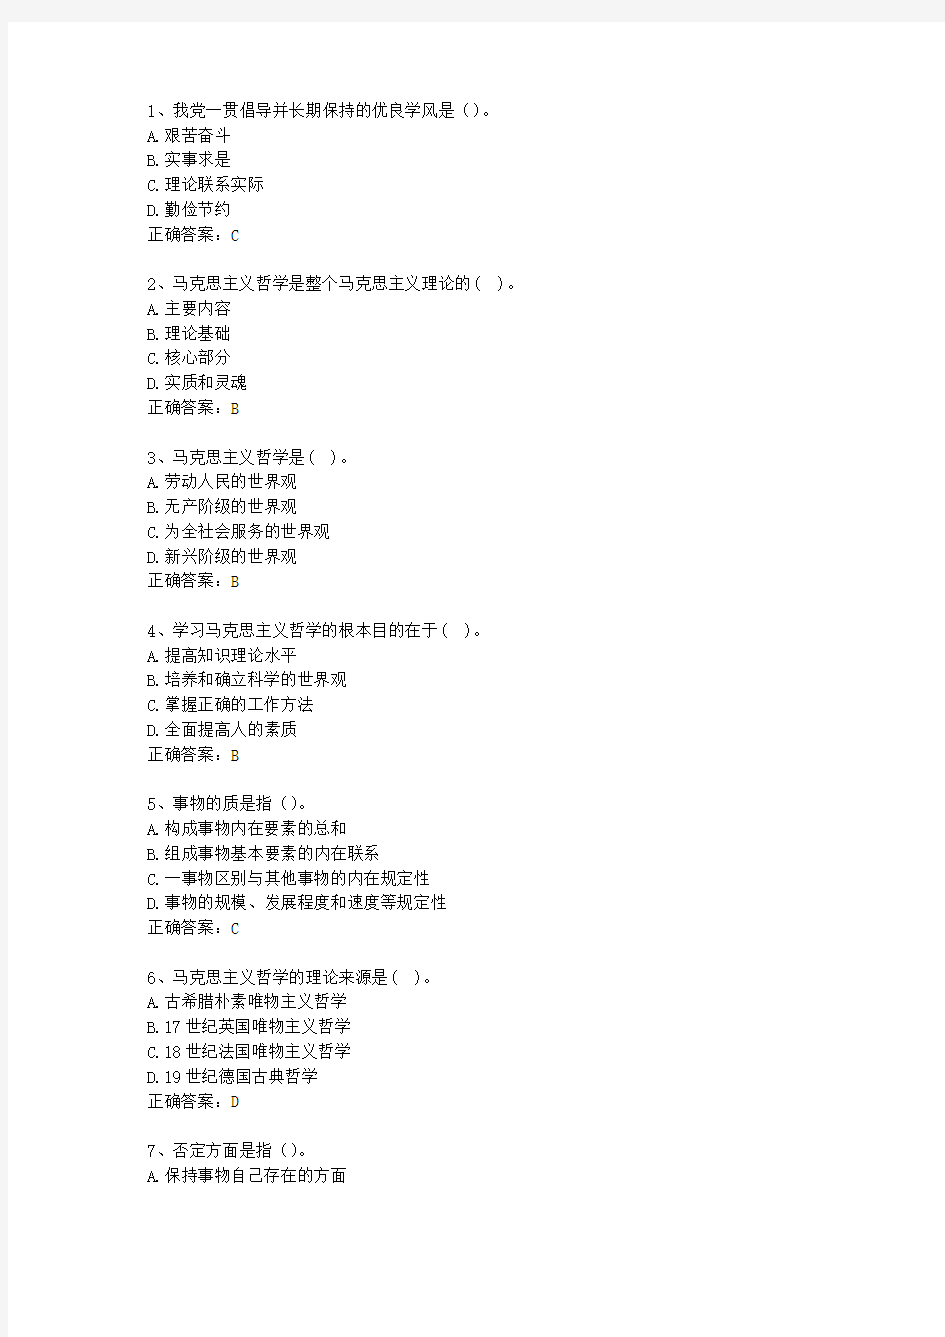 2013云南省事业单位招聘考试公共基础知识考试技巧、答题原则